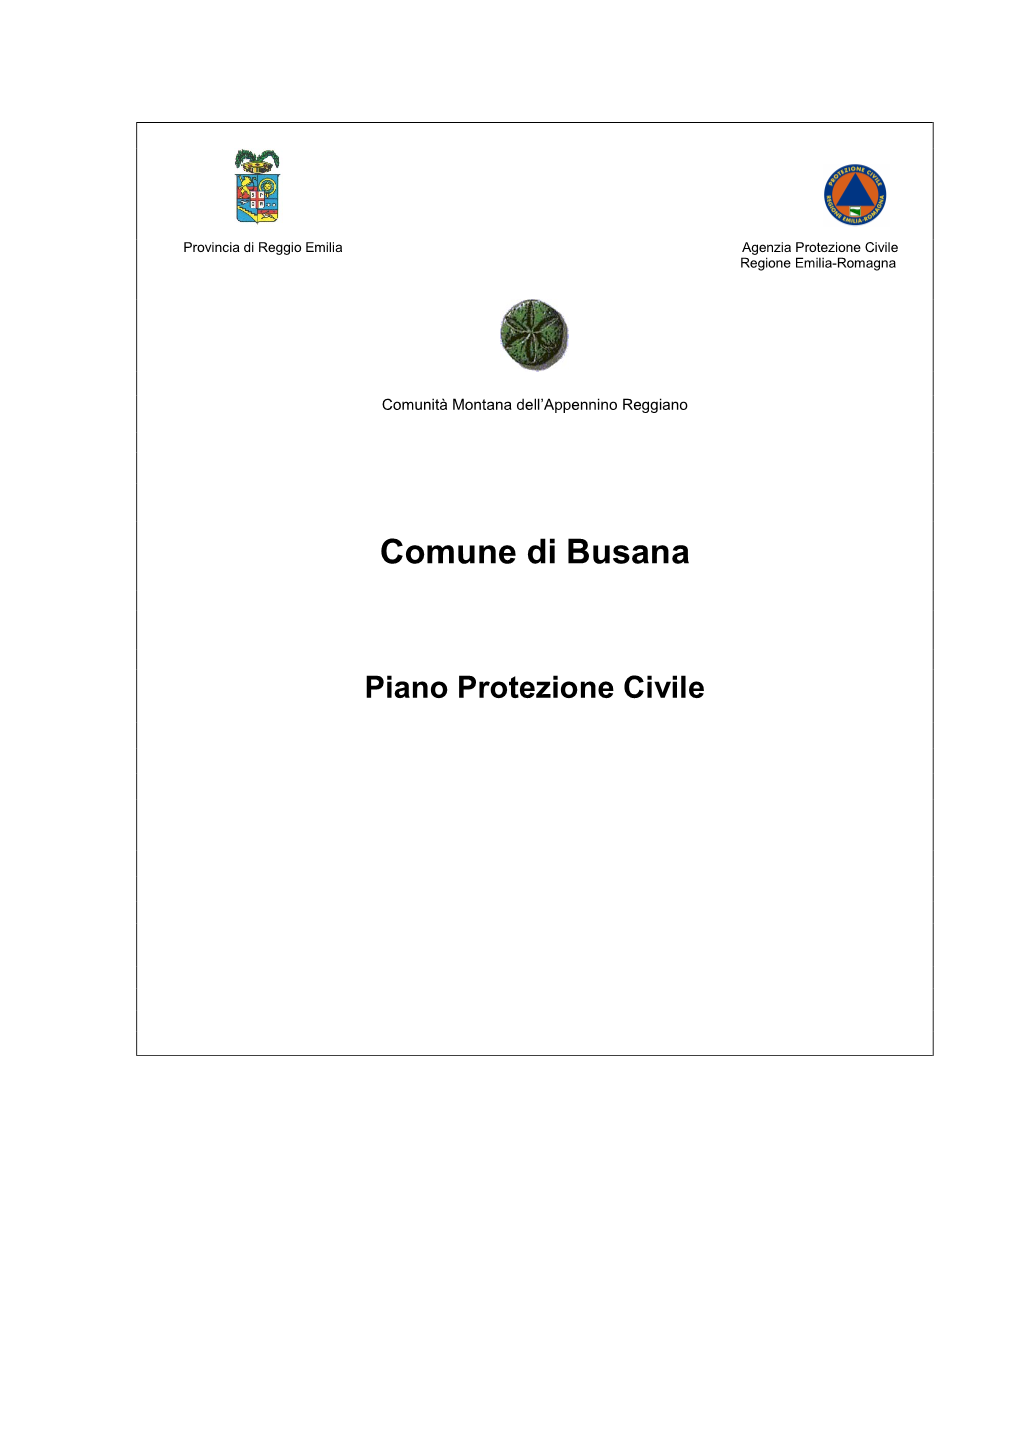 1 Piano Di Protezione Civile Busana